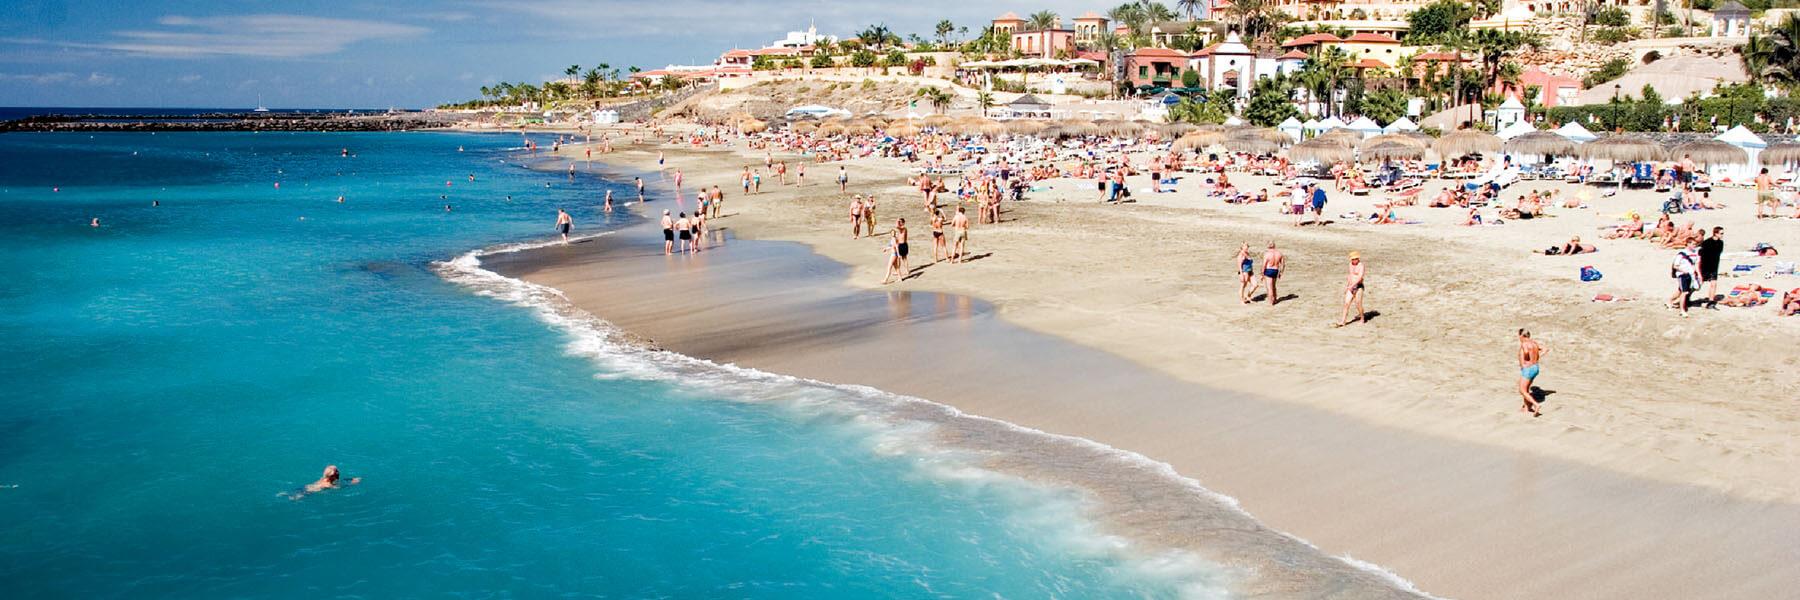 Playa de las Americas holidays